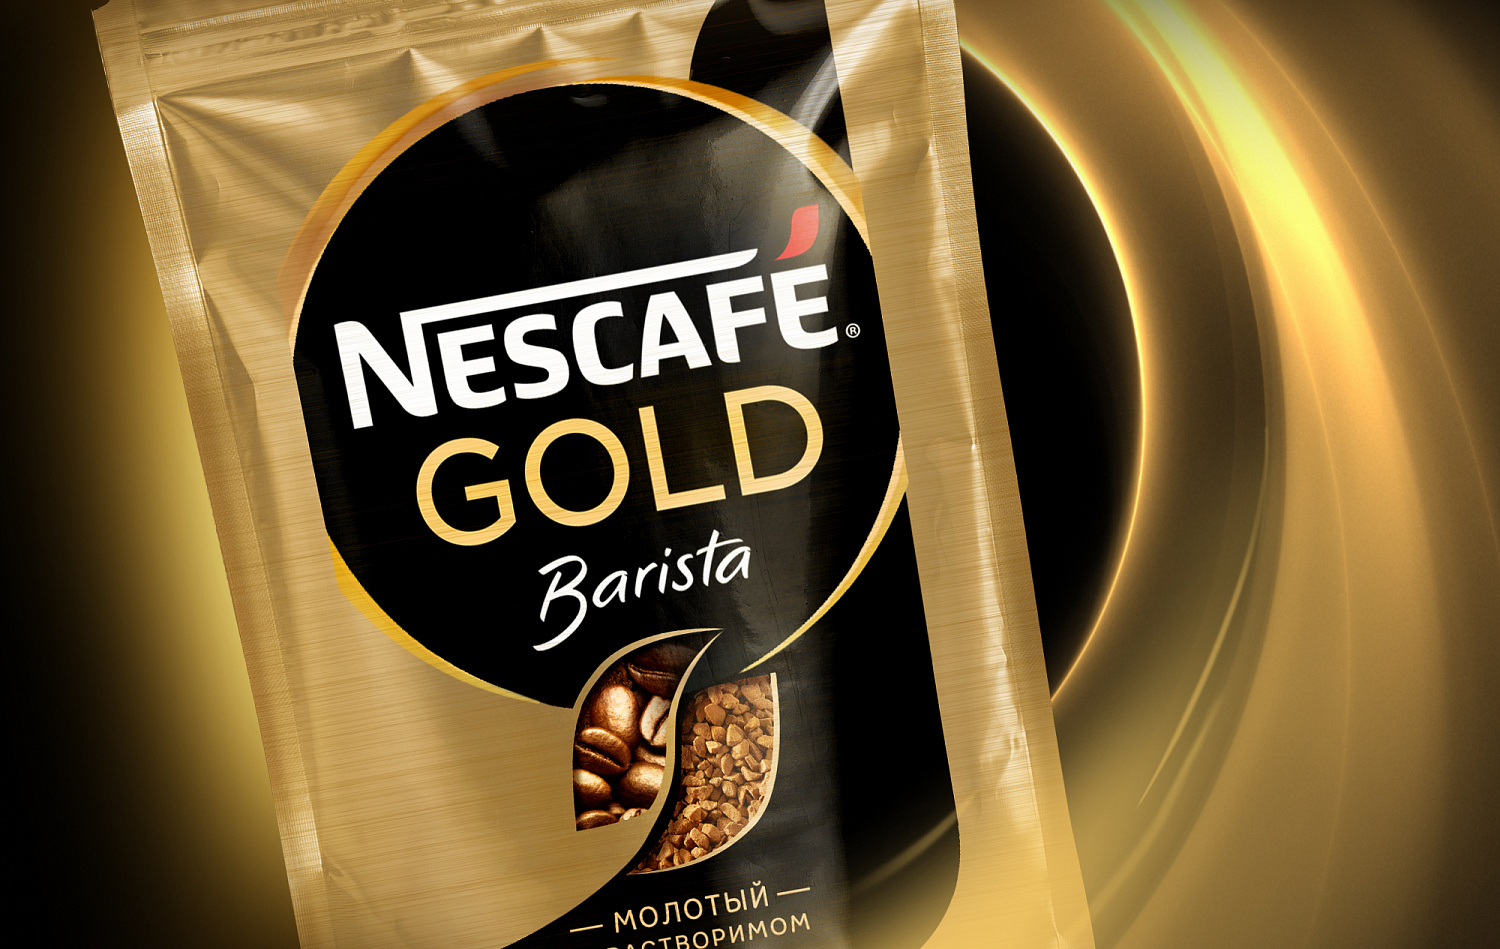 Goled nescafe Nescafe Gold